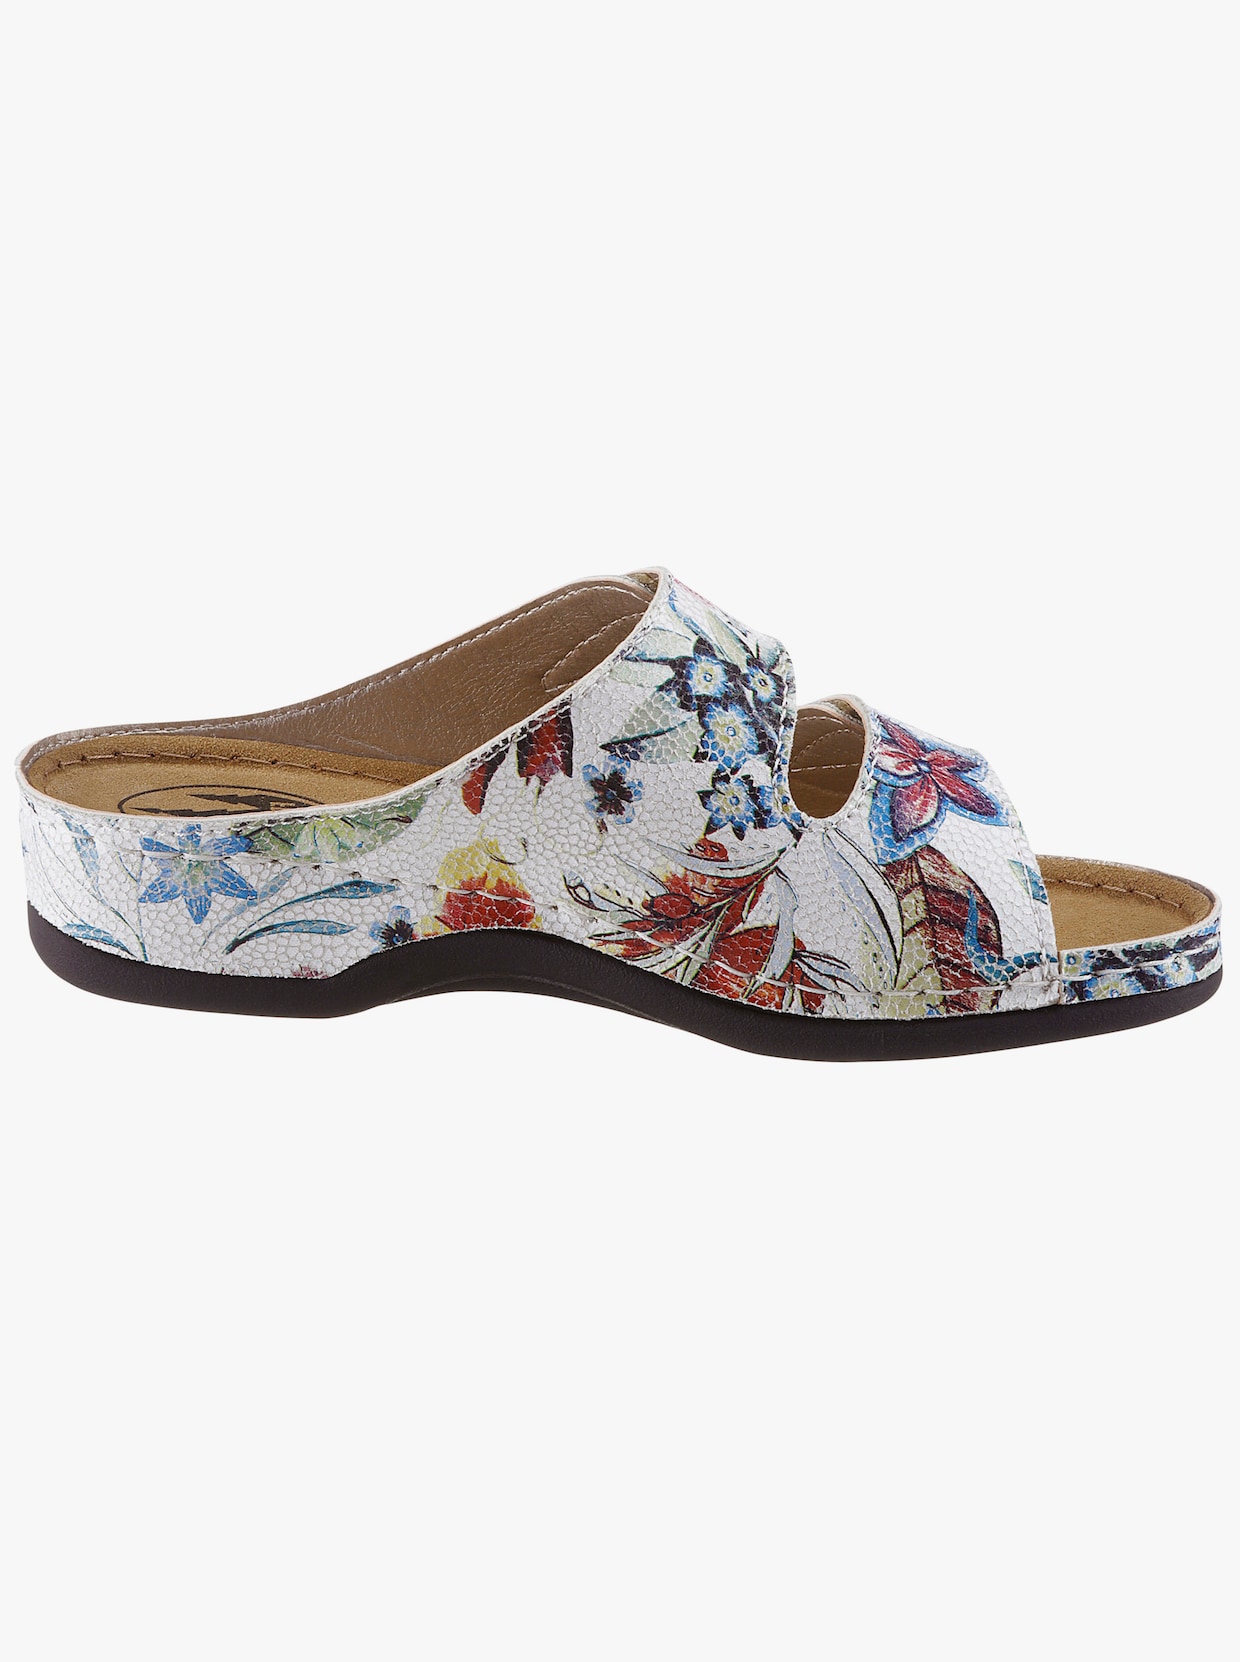 Franken Schuhe Slip in-skor - vit-blommig